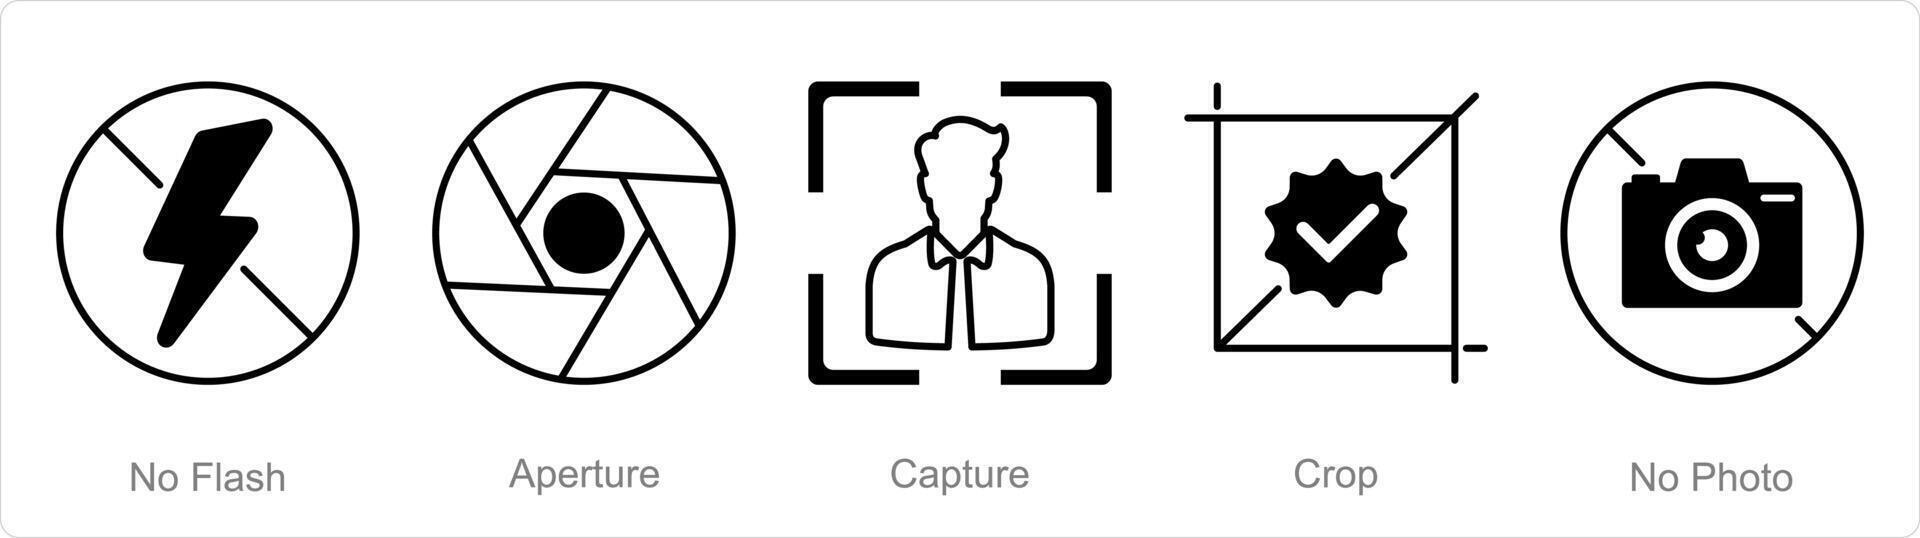 en uppsättning av 5 fotografi ikoner som Nej blixt, öppning, fånga vektor